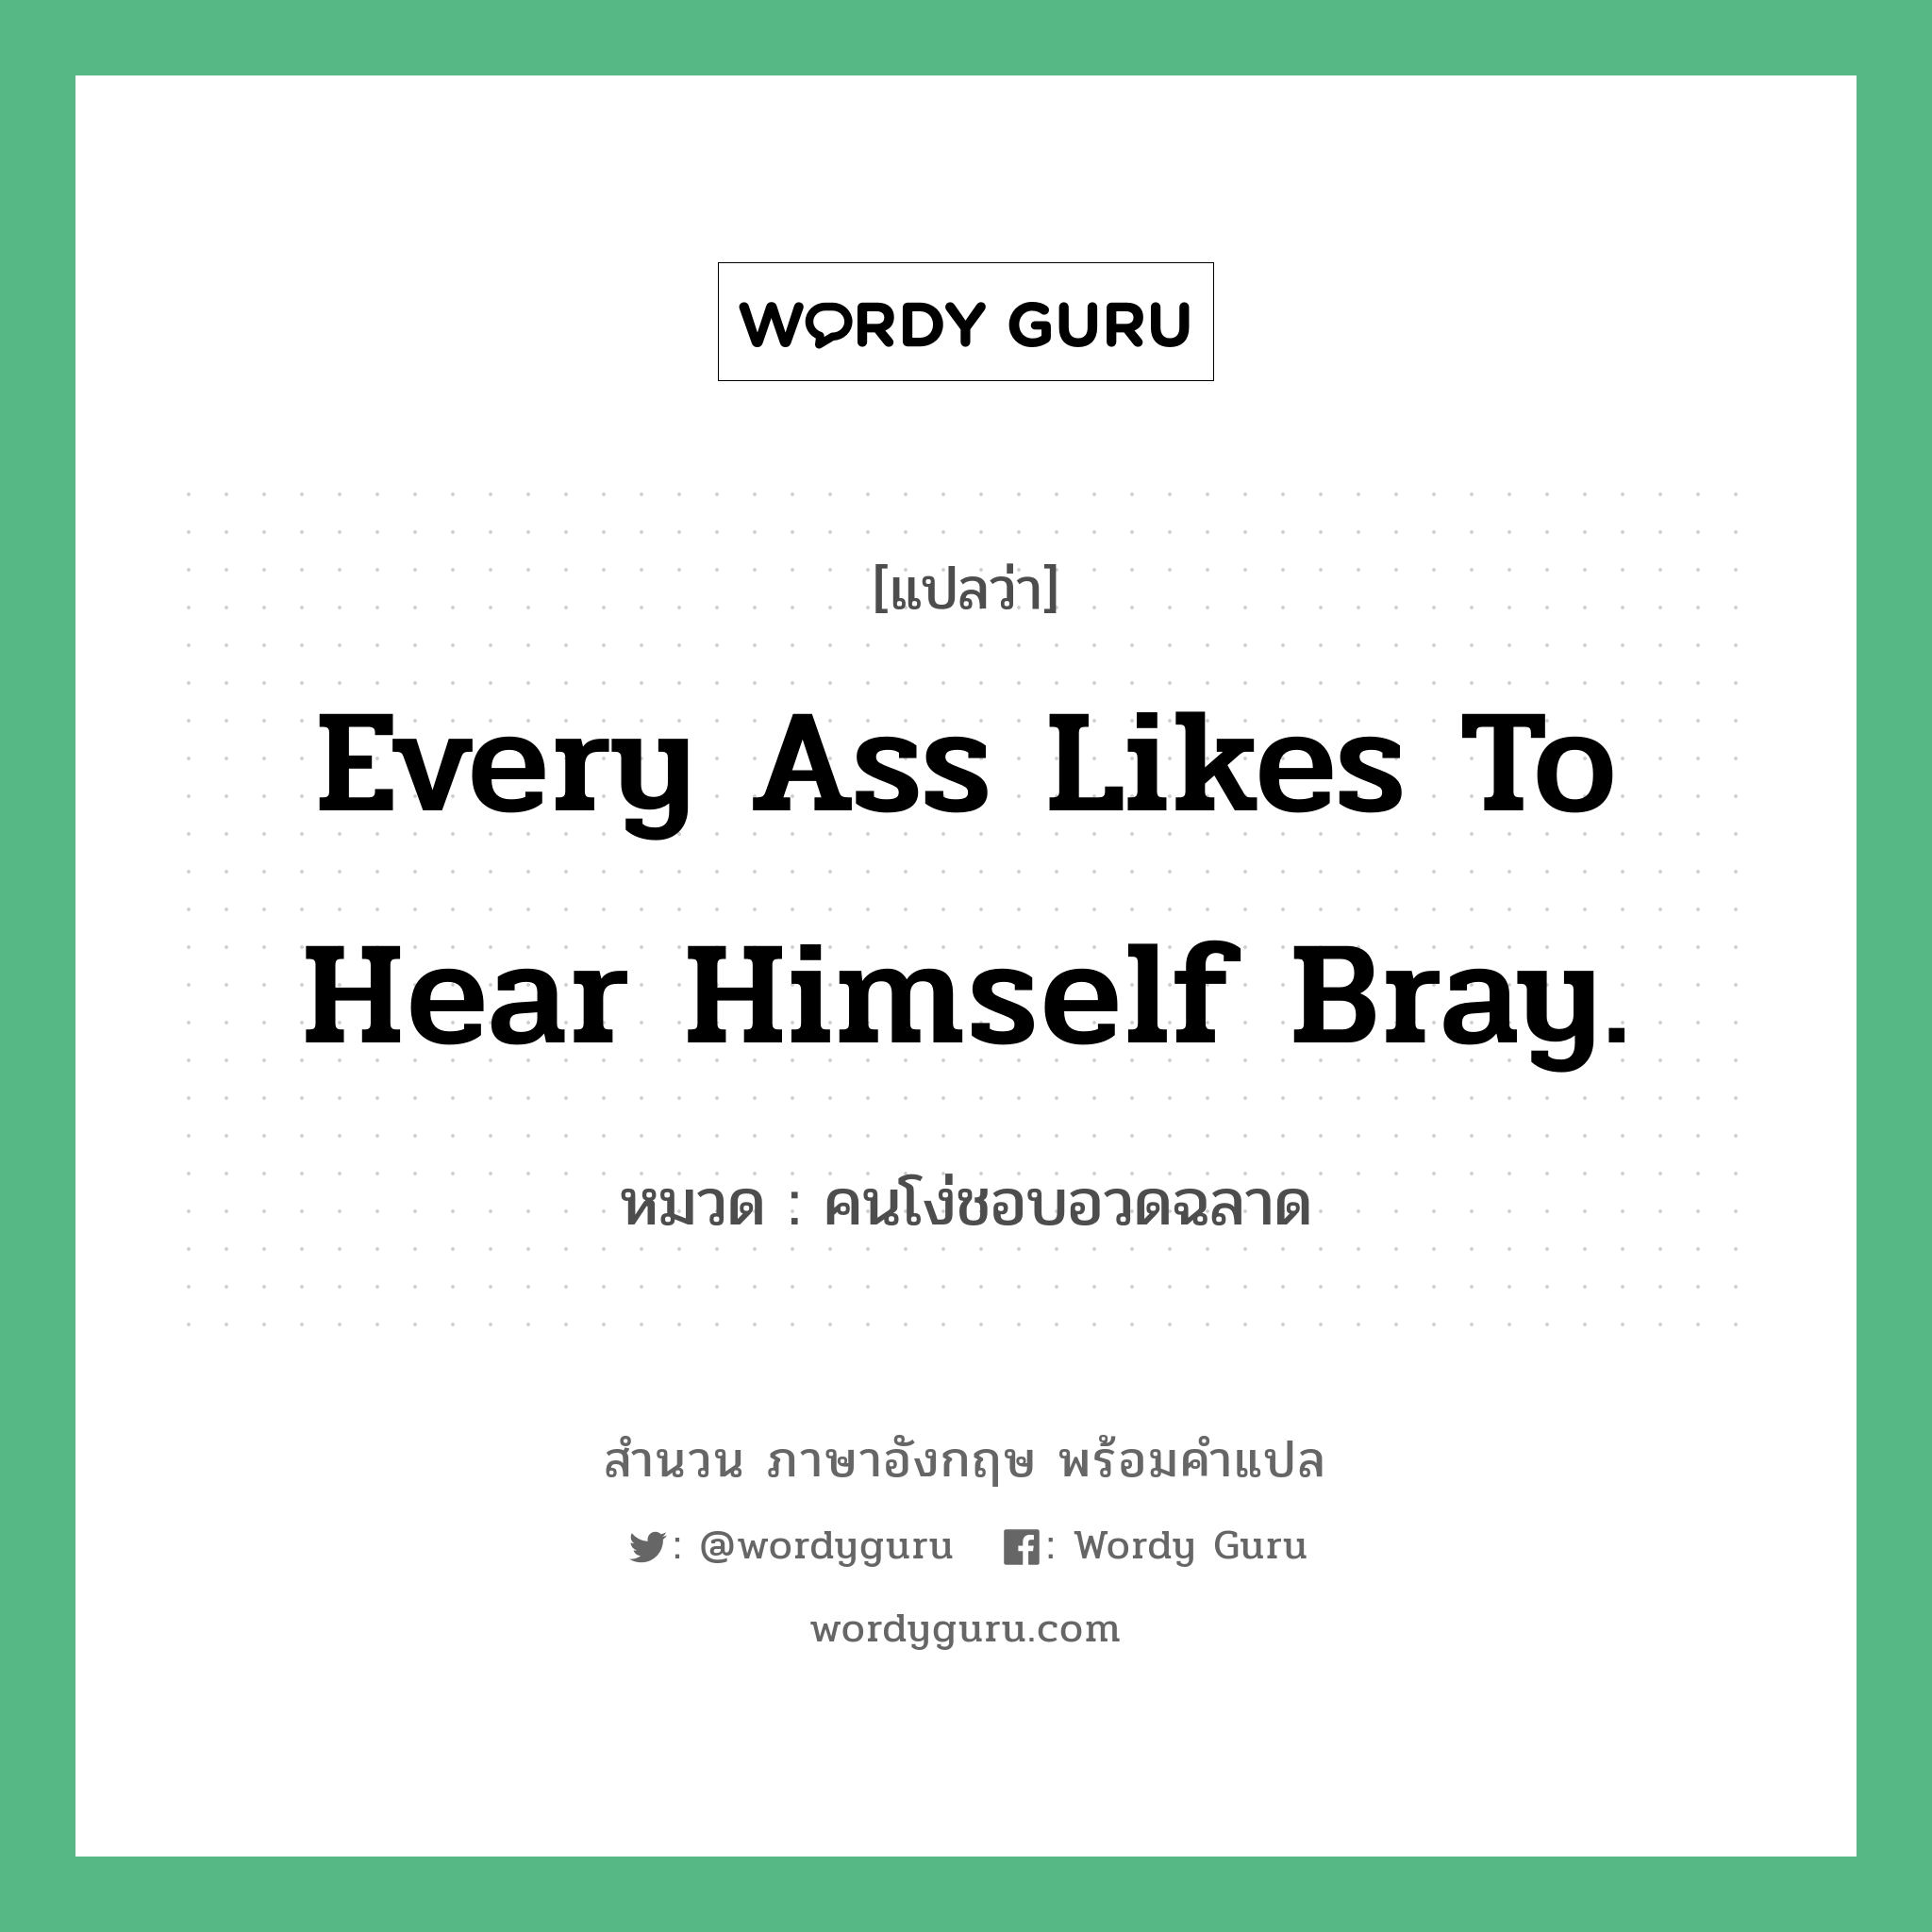 Every ass likes to hear himself bray. แปลว่า?, สำนวนภาษาอังกฤษ Every ass likes to hear himself bray. หมวด คนโง่ชอบอวดฉลาด คำสุภาษิต ภาษาอังกฤษ หมวด คำสุภาษิต ภาษาอังกฤษ